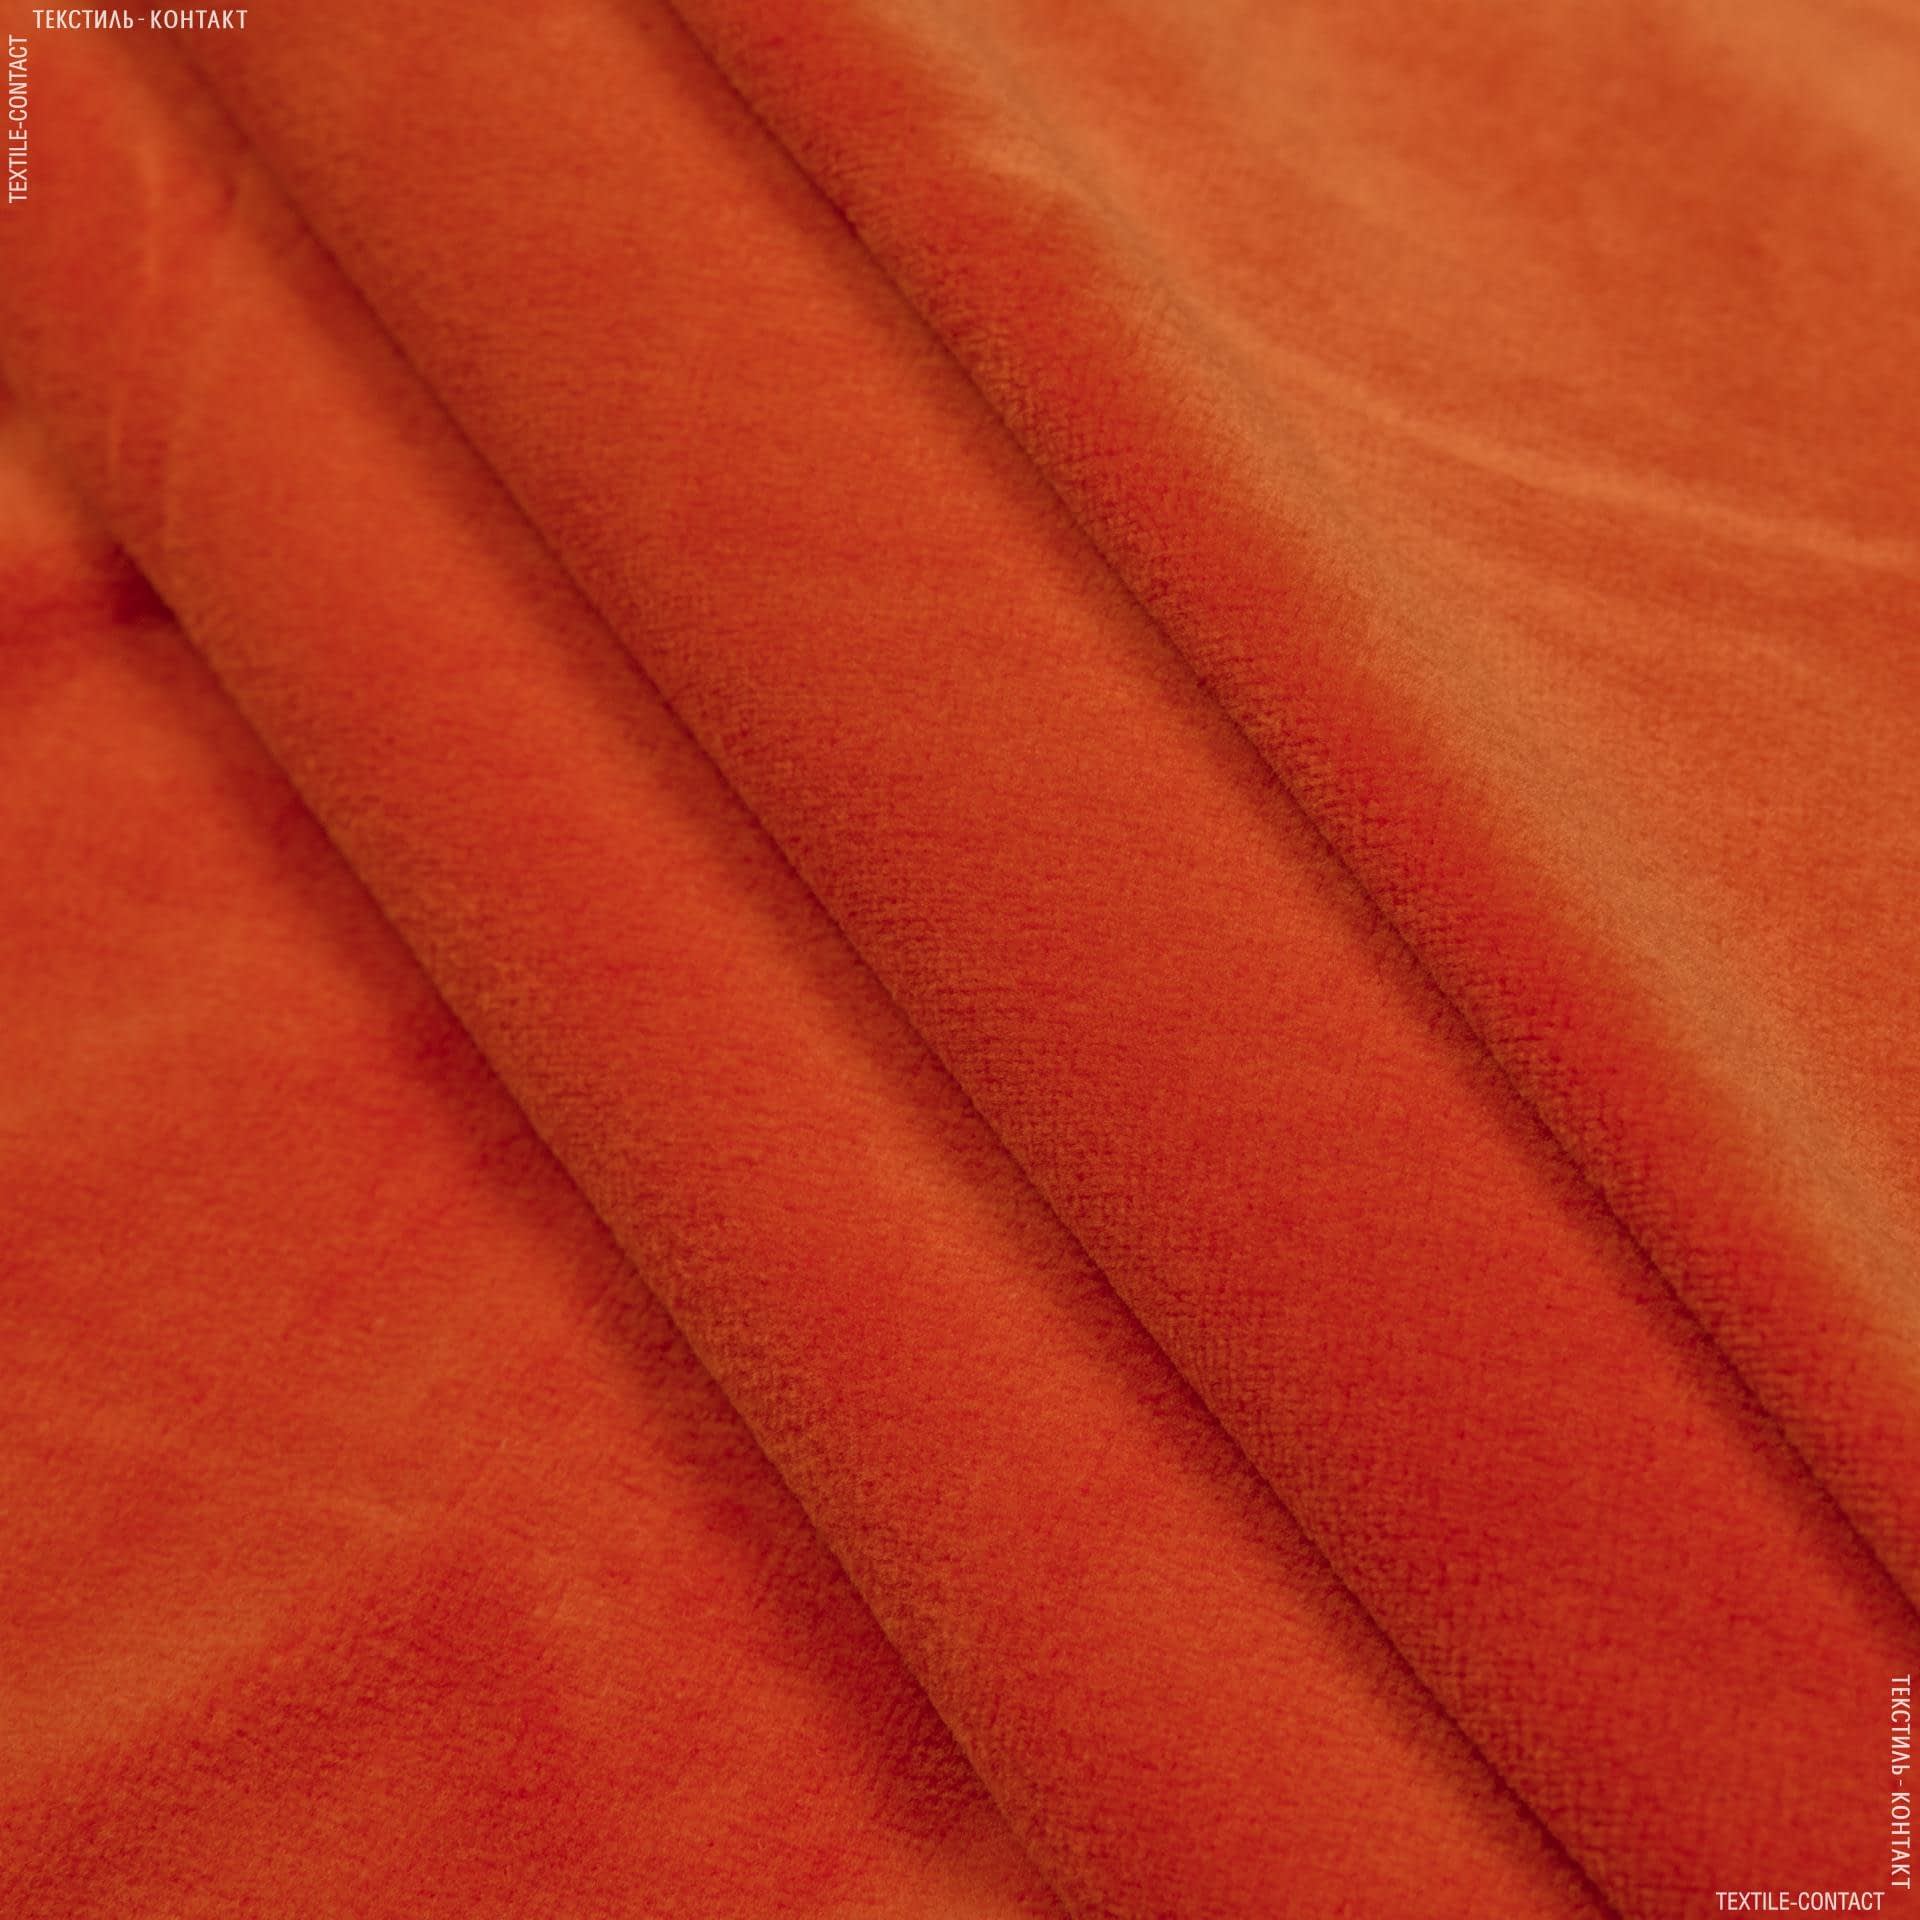 Ткани для детской одежды - Велюр хб оранжевый